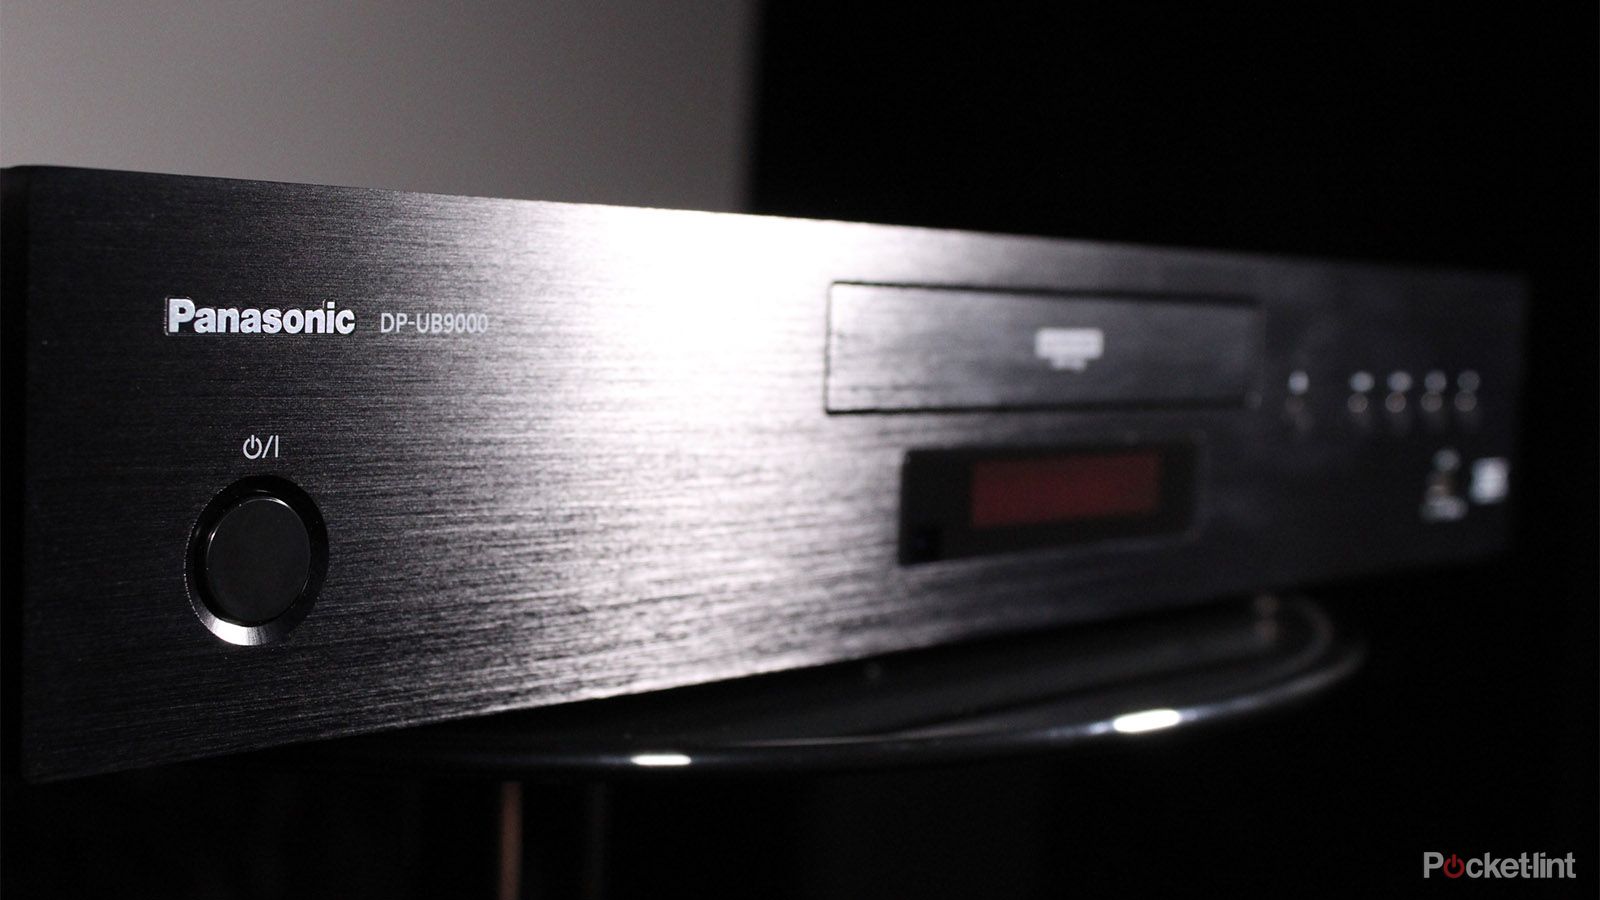  Panasonic Reproductor Blu-ray DPUB9000 4K Ultra HD con HDR10+ y  reproducción Dolby Vision (negro) : Electrónica